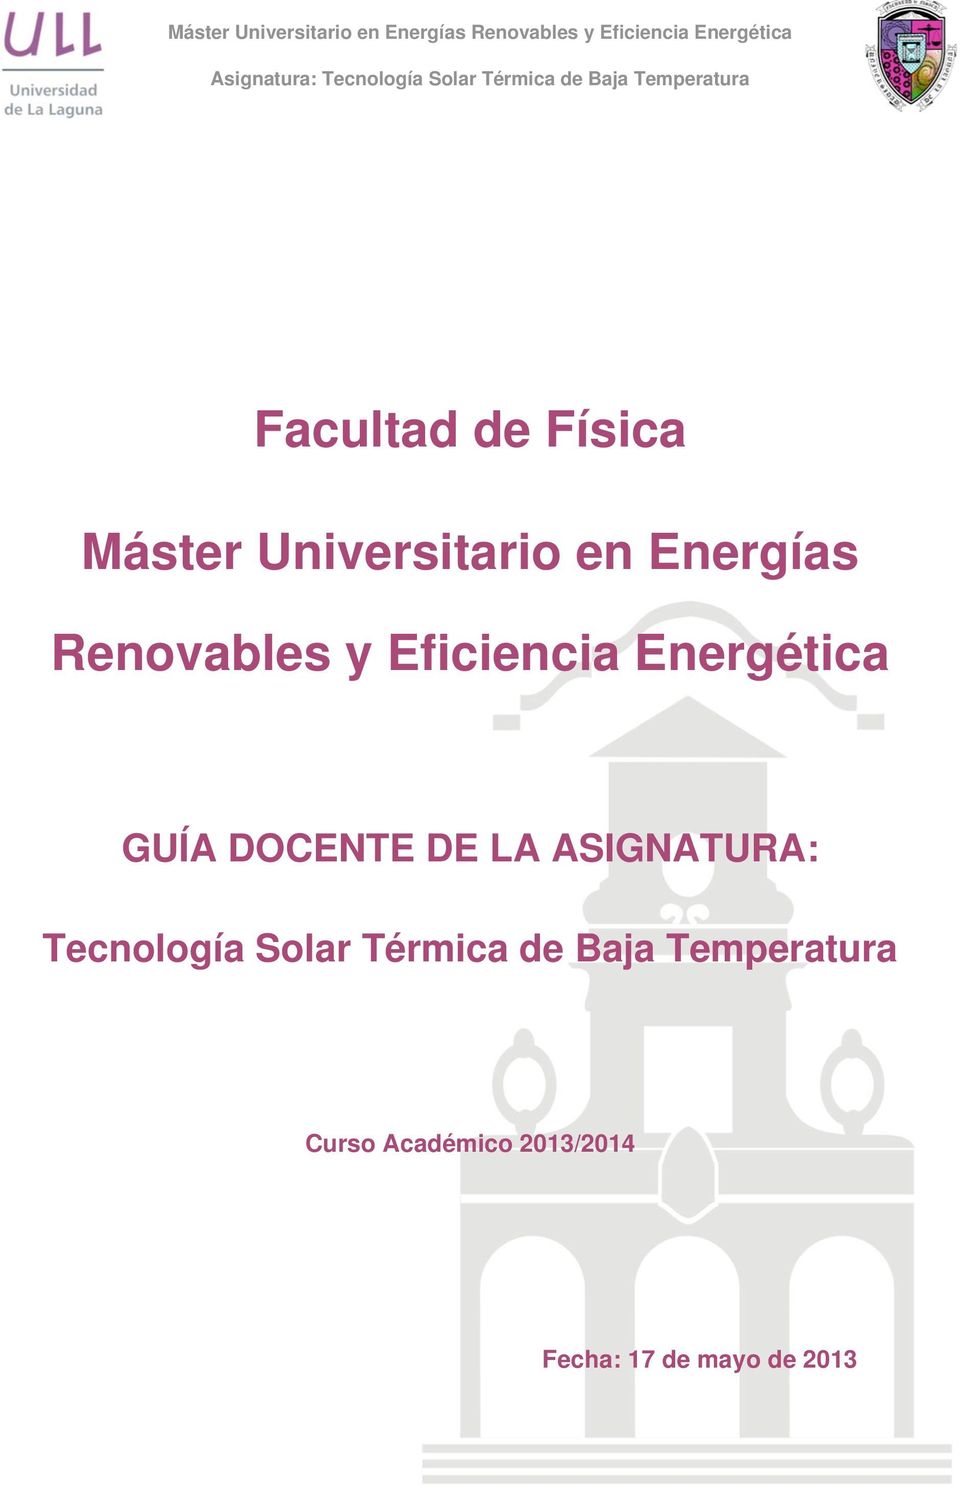 ASIGNATURA: Tecnología Solar Térmica de Baja